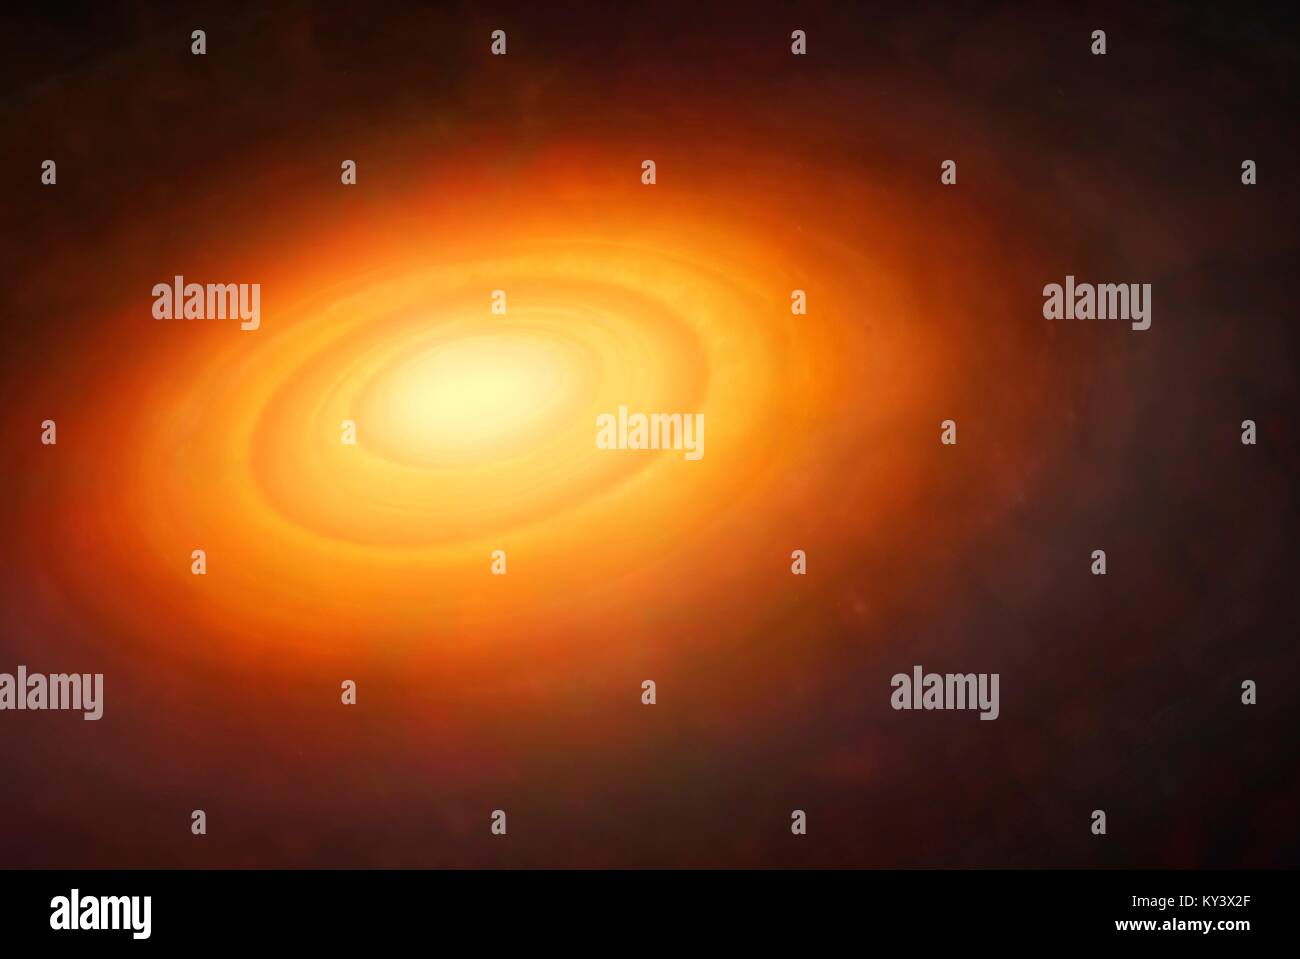 Solar system Bildung. Abbildung: Die ursprüngliche Nebel (solaren Nebel) rund um das neugeborene Sonne (Mitte). Die Sonne war als Gas gebildet, Alt-friedrichsfelde, bis er dicht genug und warm genug war die nukleare Reaktionen, dass ein Star zu beginnen. Die solaren Nebel, ursprünglich eine Kugel von Gas, Staub und Gestein, wurde eine Disc, die schließlich, unter Schwerkraft, in Planeten verschmolz. Einige Planeten sind bereits gesehen, die in der Scheibe (rot leuchtet), Höhlenforschung, deutliche Lücken, wie sie Material in ihre Bahnen ziehen. Es wird gedacht, um den Planeten vor etwa 4,6 Milliarden Jahren gebildet. Stockfoto